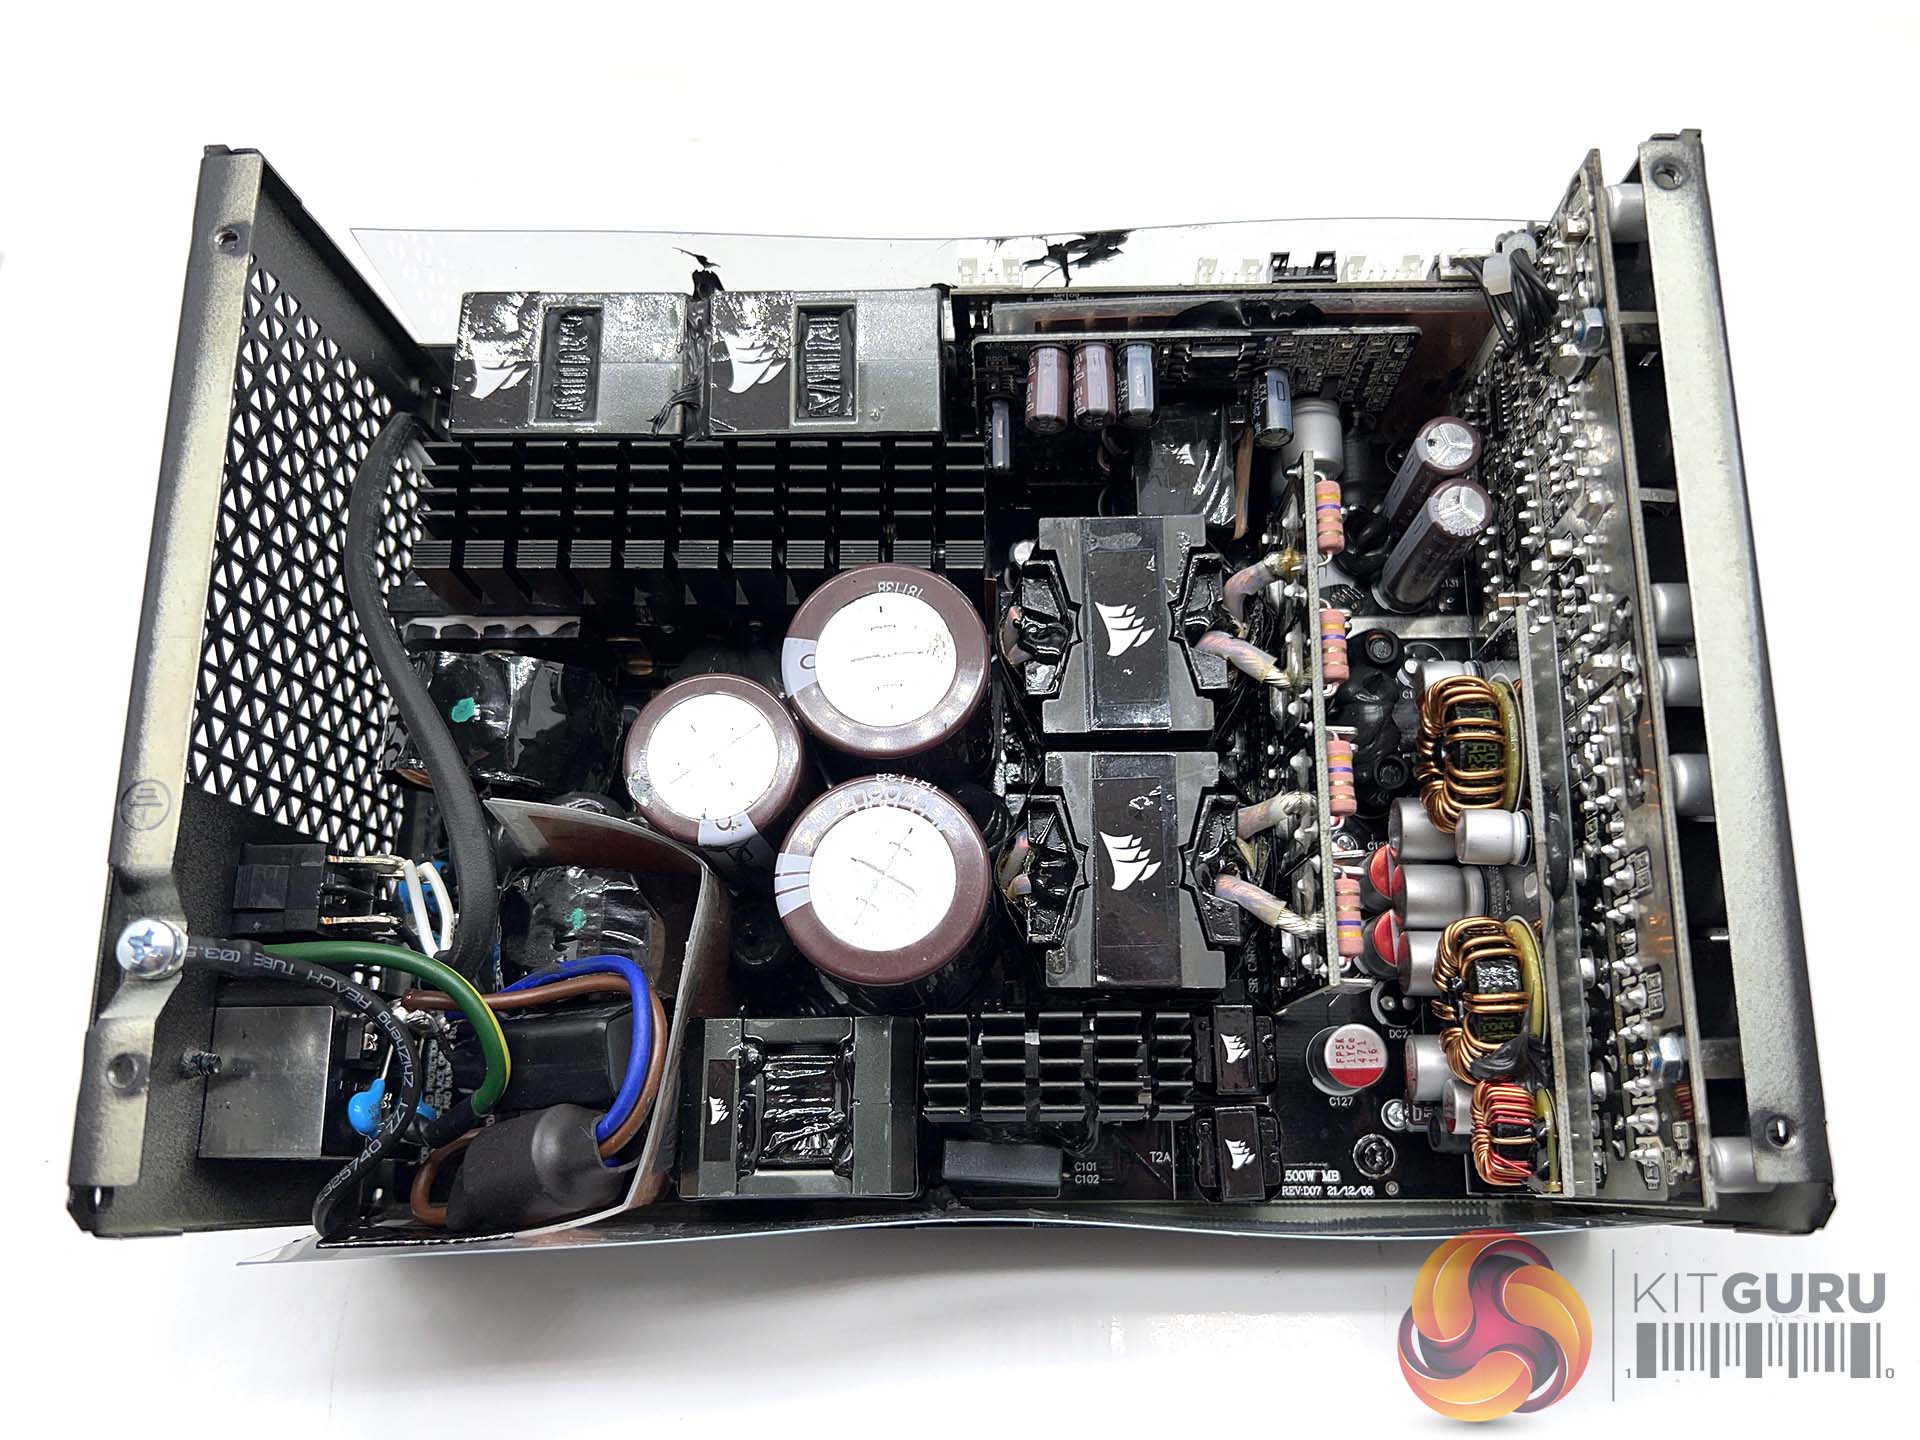 LABO] Corsair HX1500i et câble d'alimentation 12VHPWR 600 PCIe Gen5